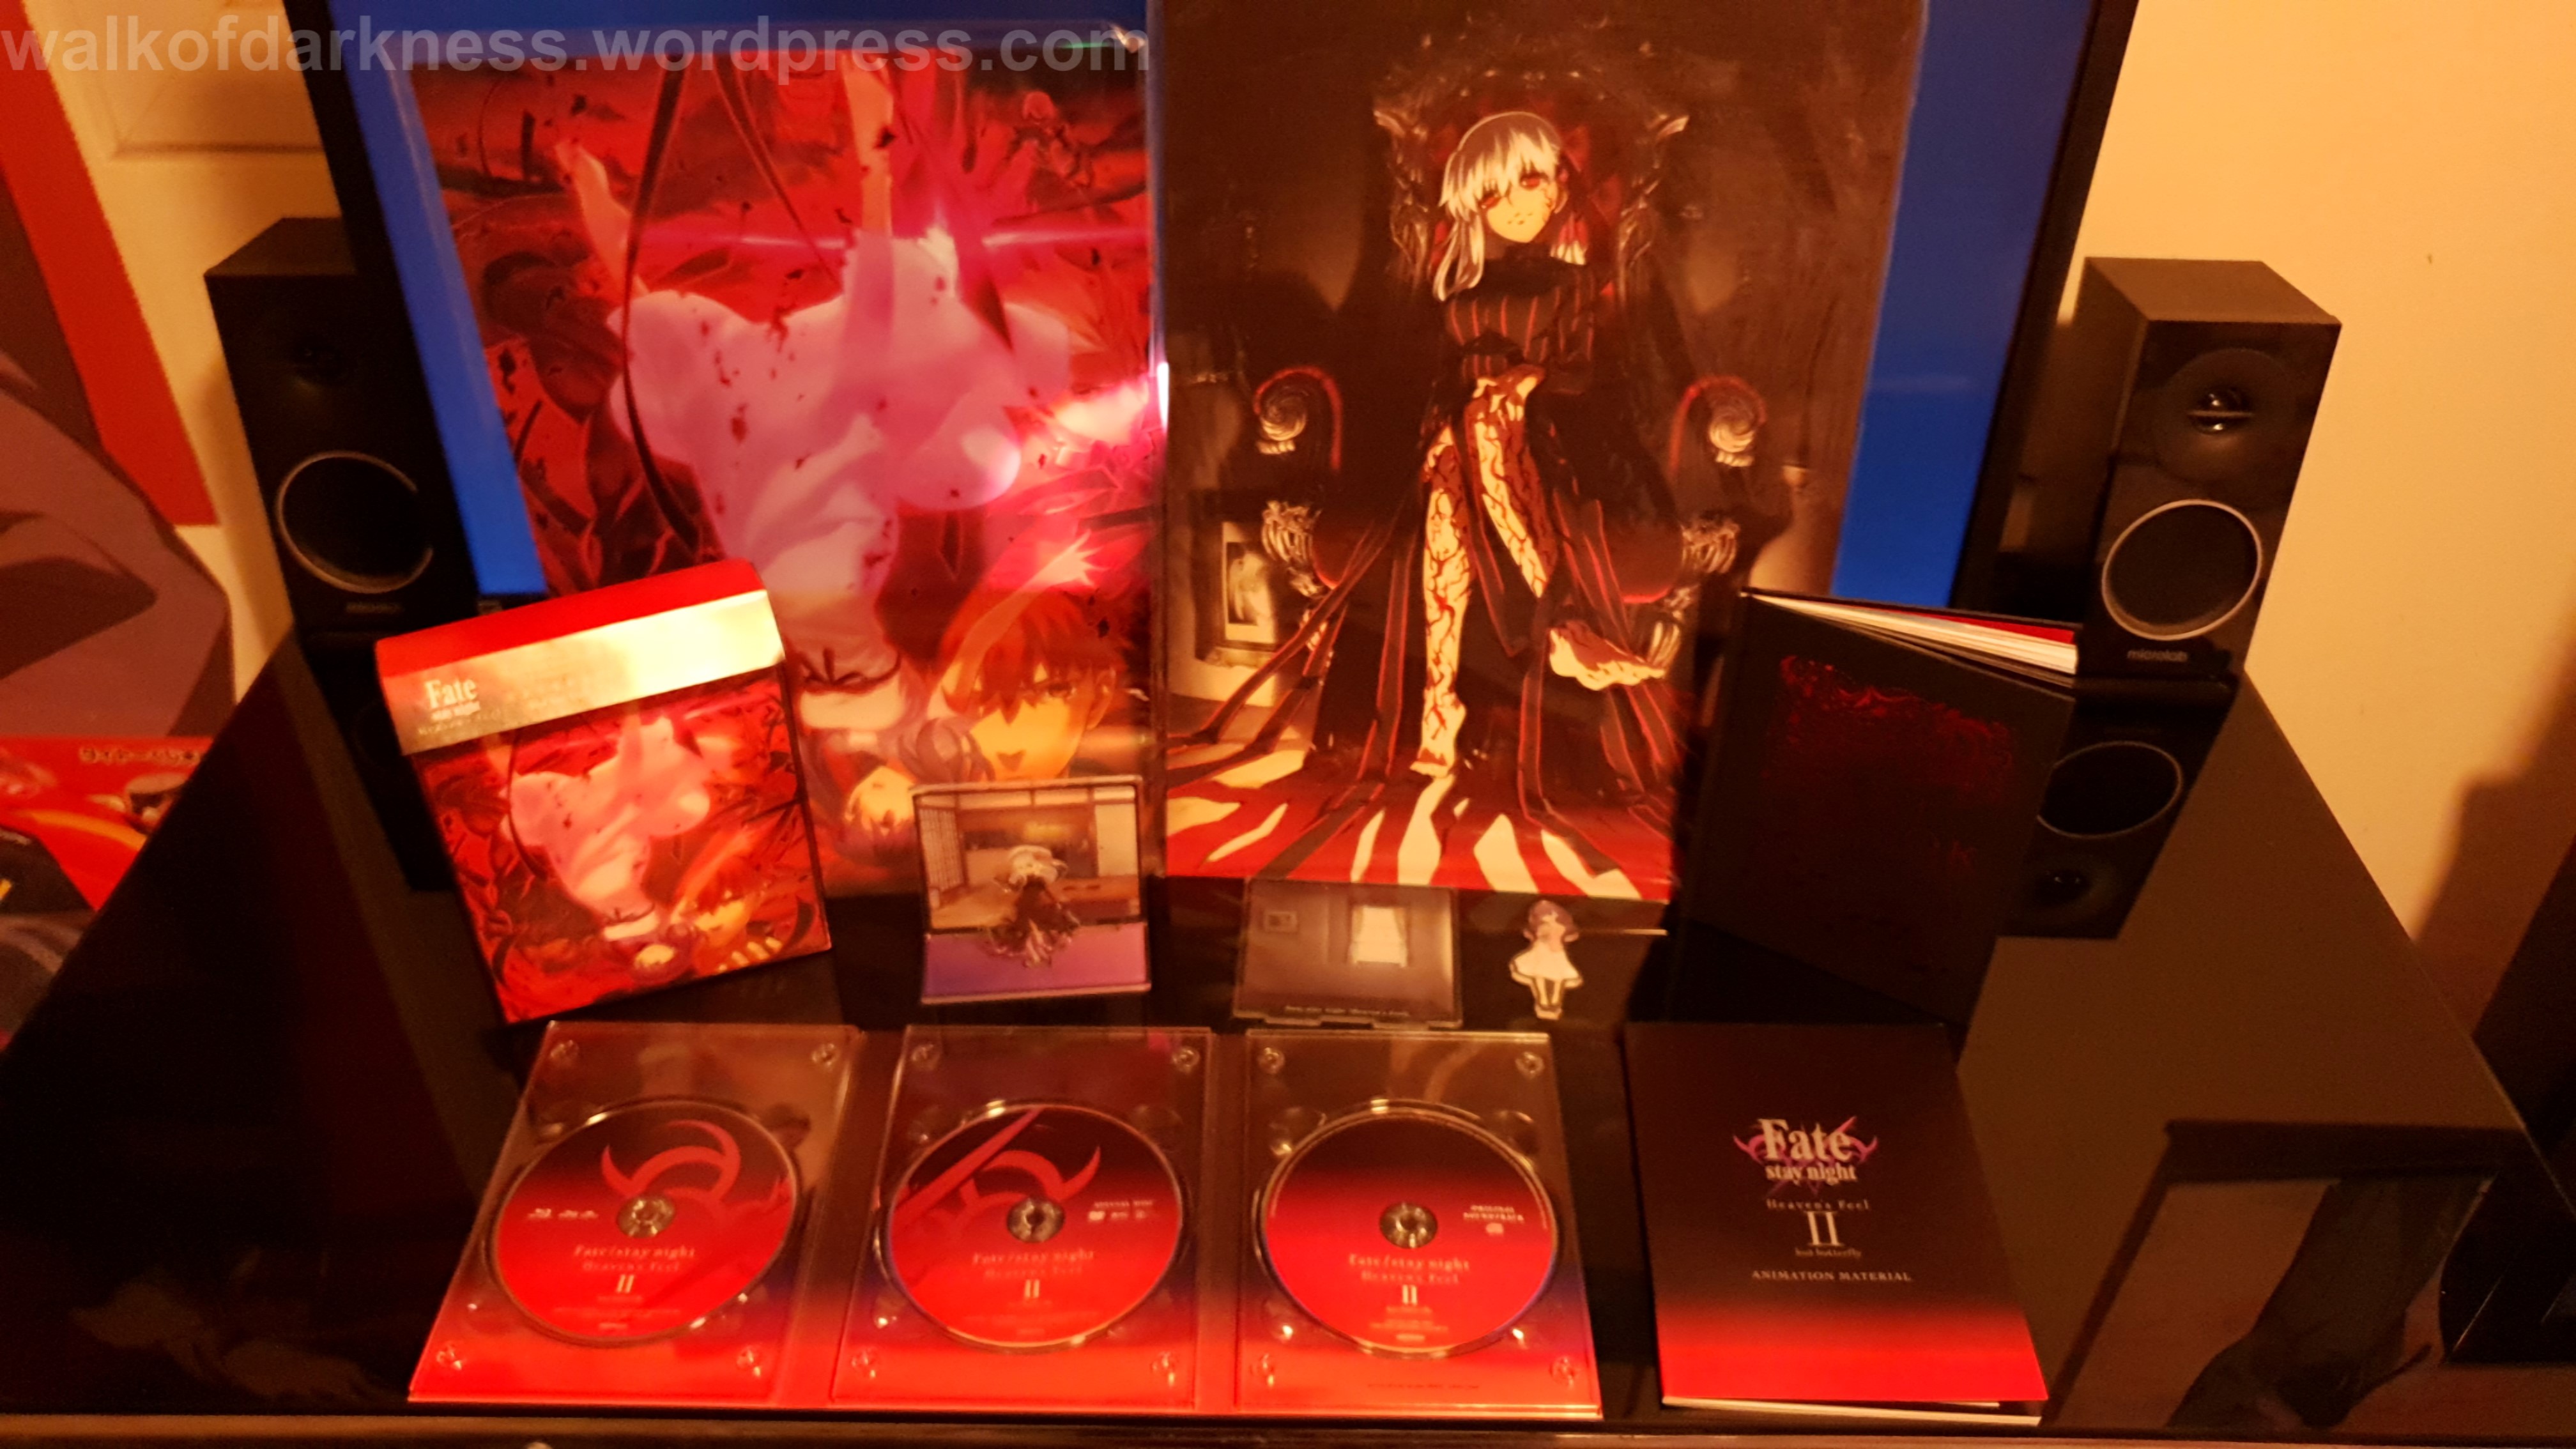 Fate/stay night: Heaven's Feel II. Lost Butterfly Blu-ray Standard